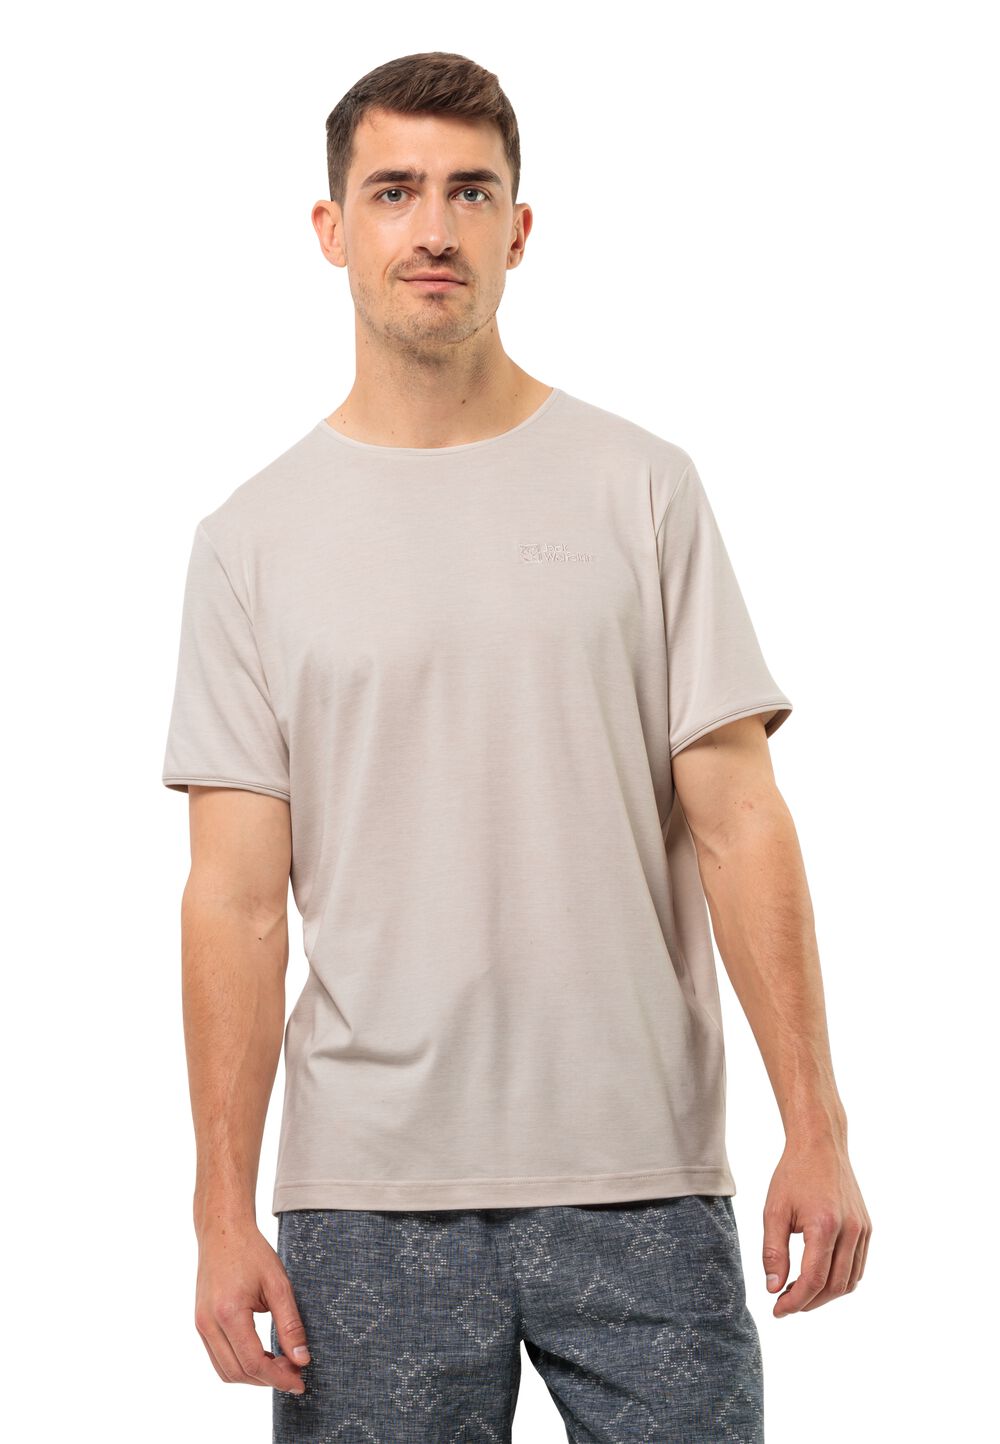 Jack Wolfskin Travel T-Shirt Men Functioneel shirt Heren 3XL sea shell sea shell